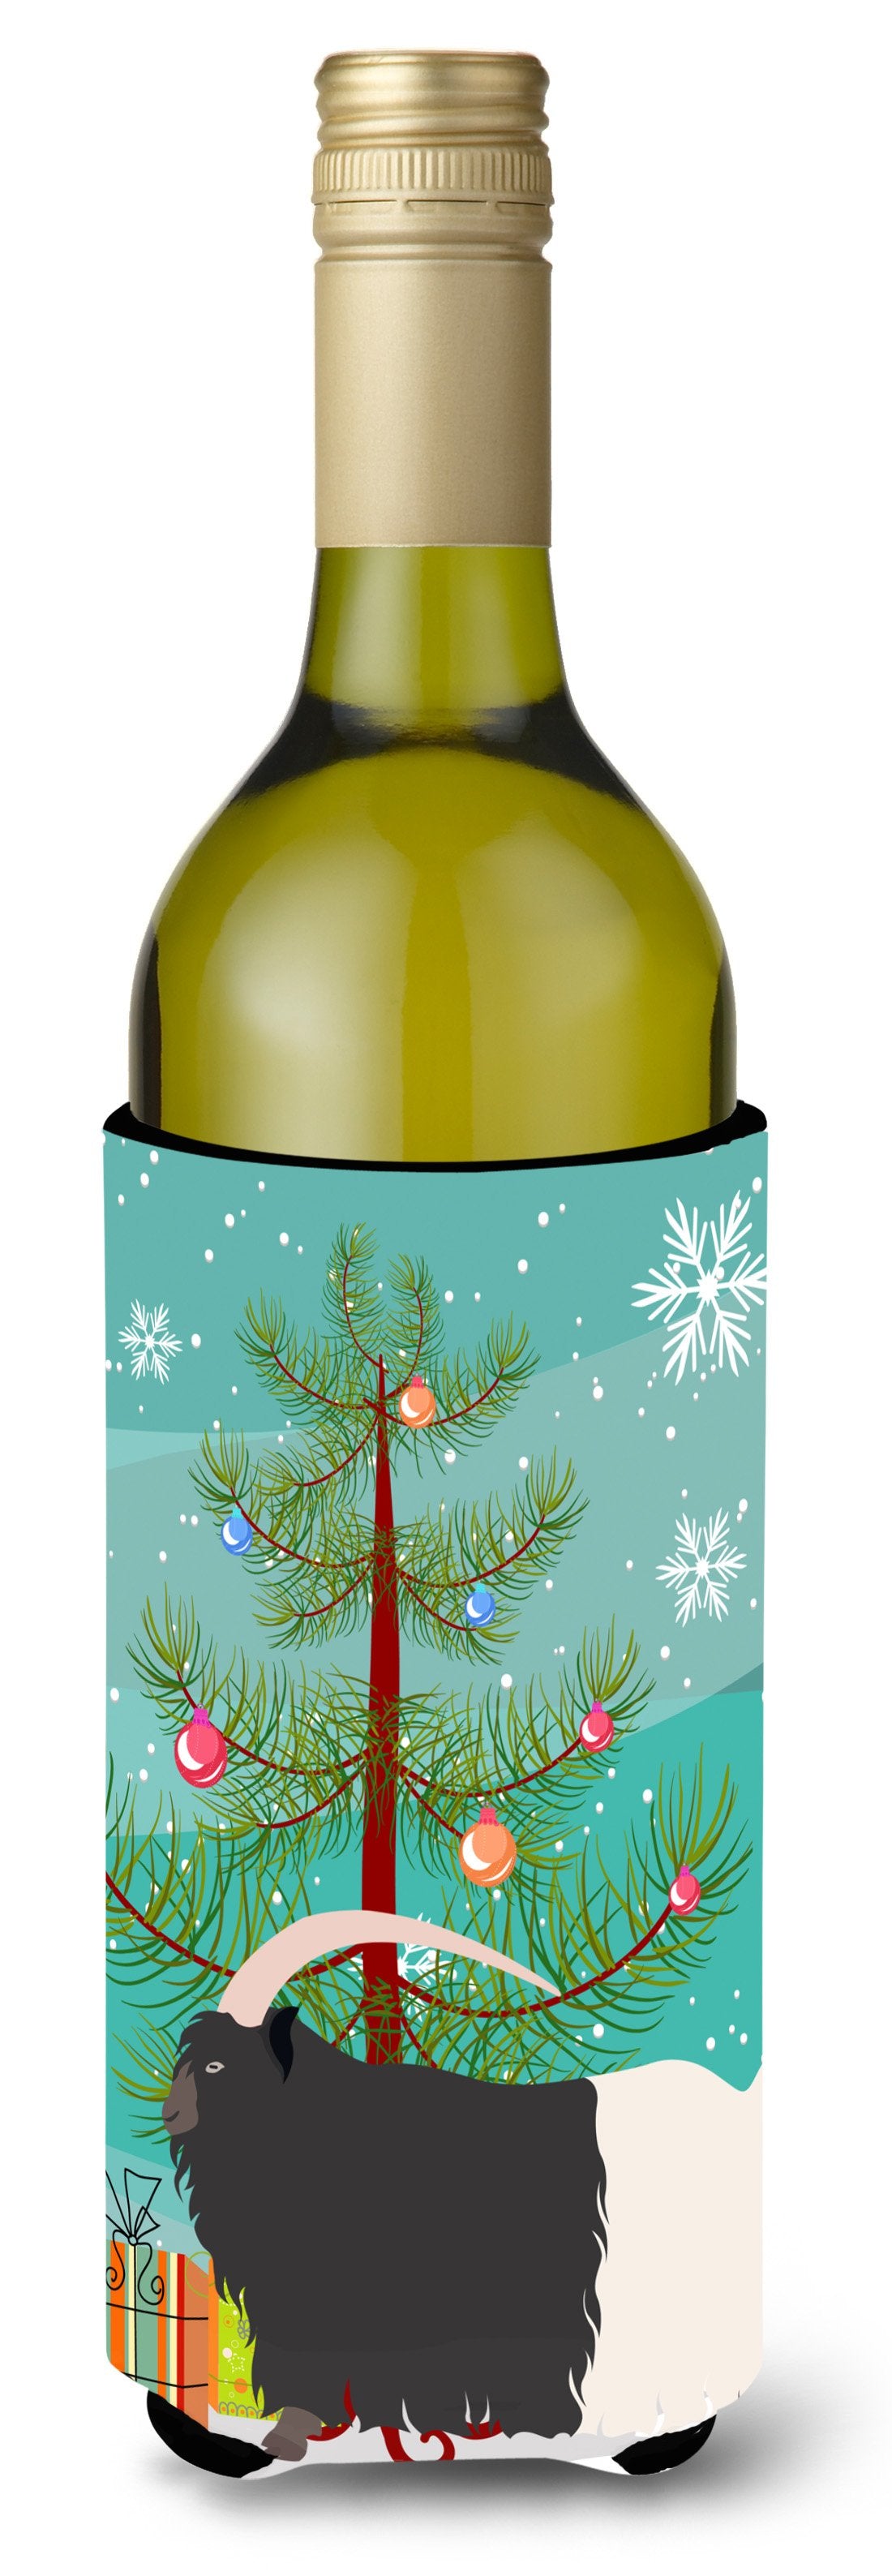 Welsh Black-Necked Goat Christmas Wine Bottle Beverge Insulator Hugger BB9254LITERK by Caroline's Treasures